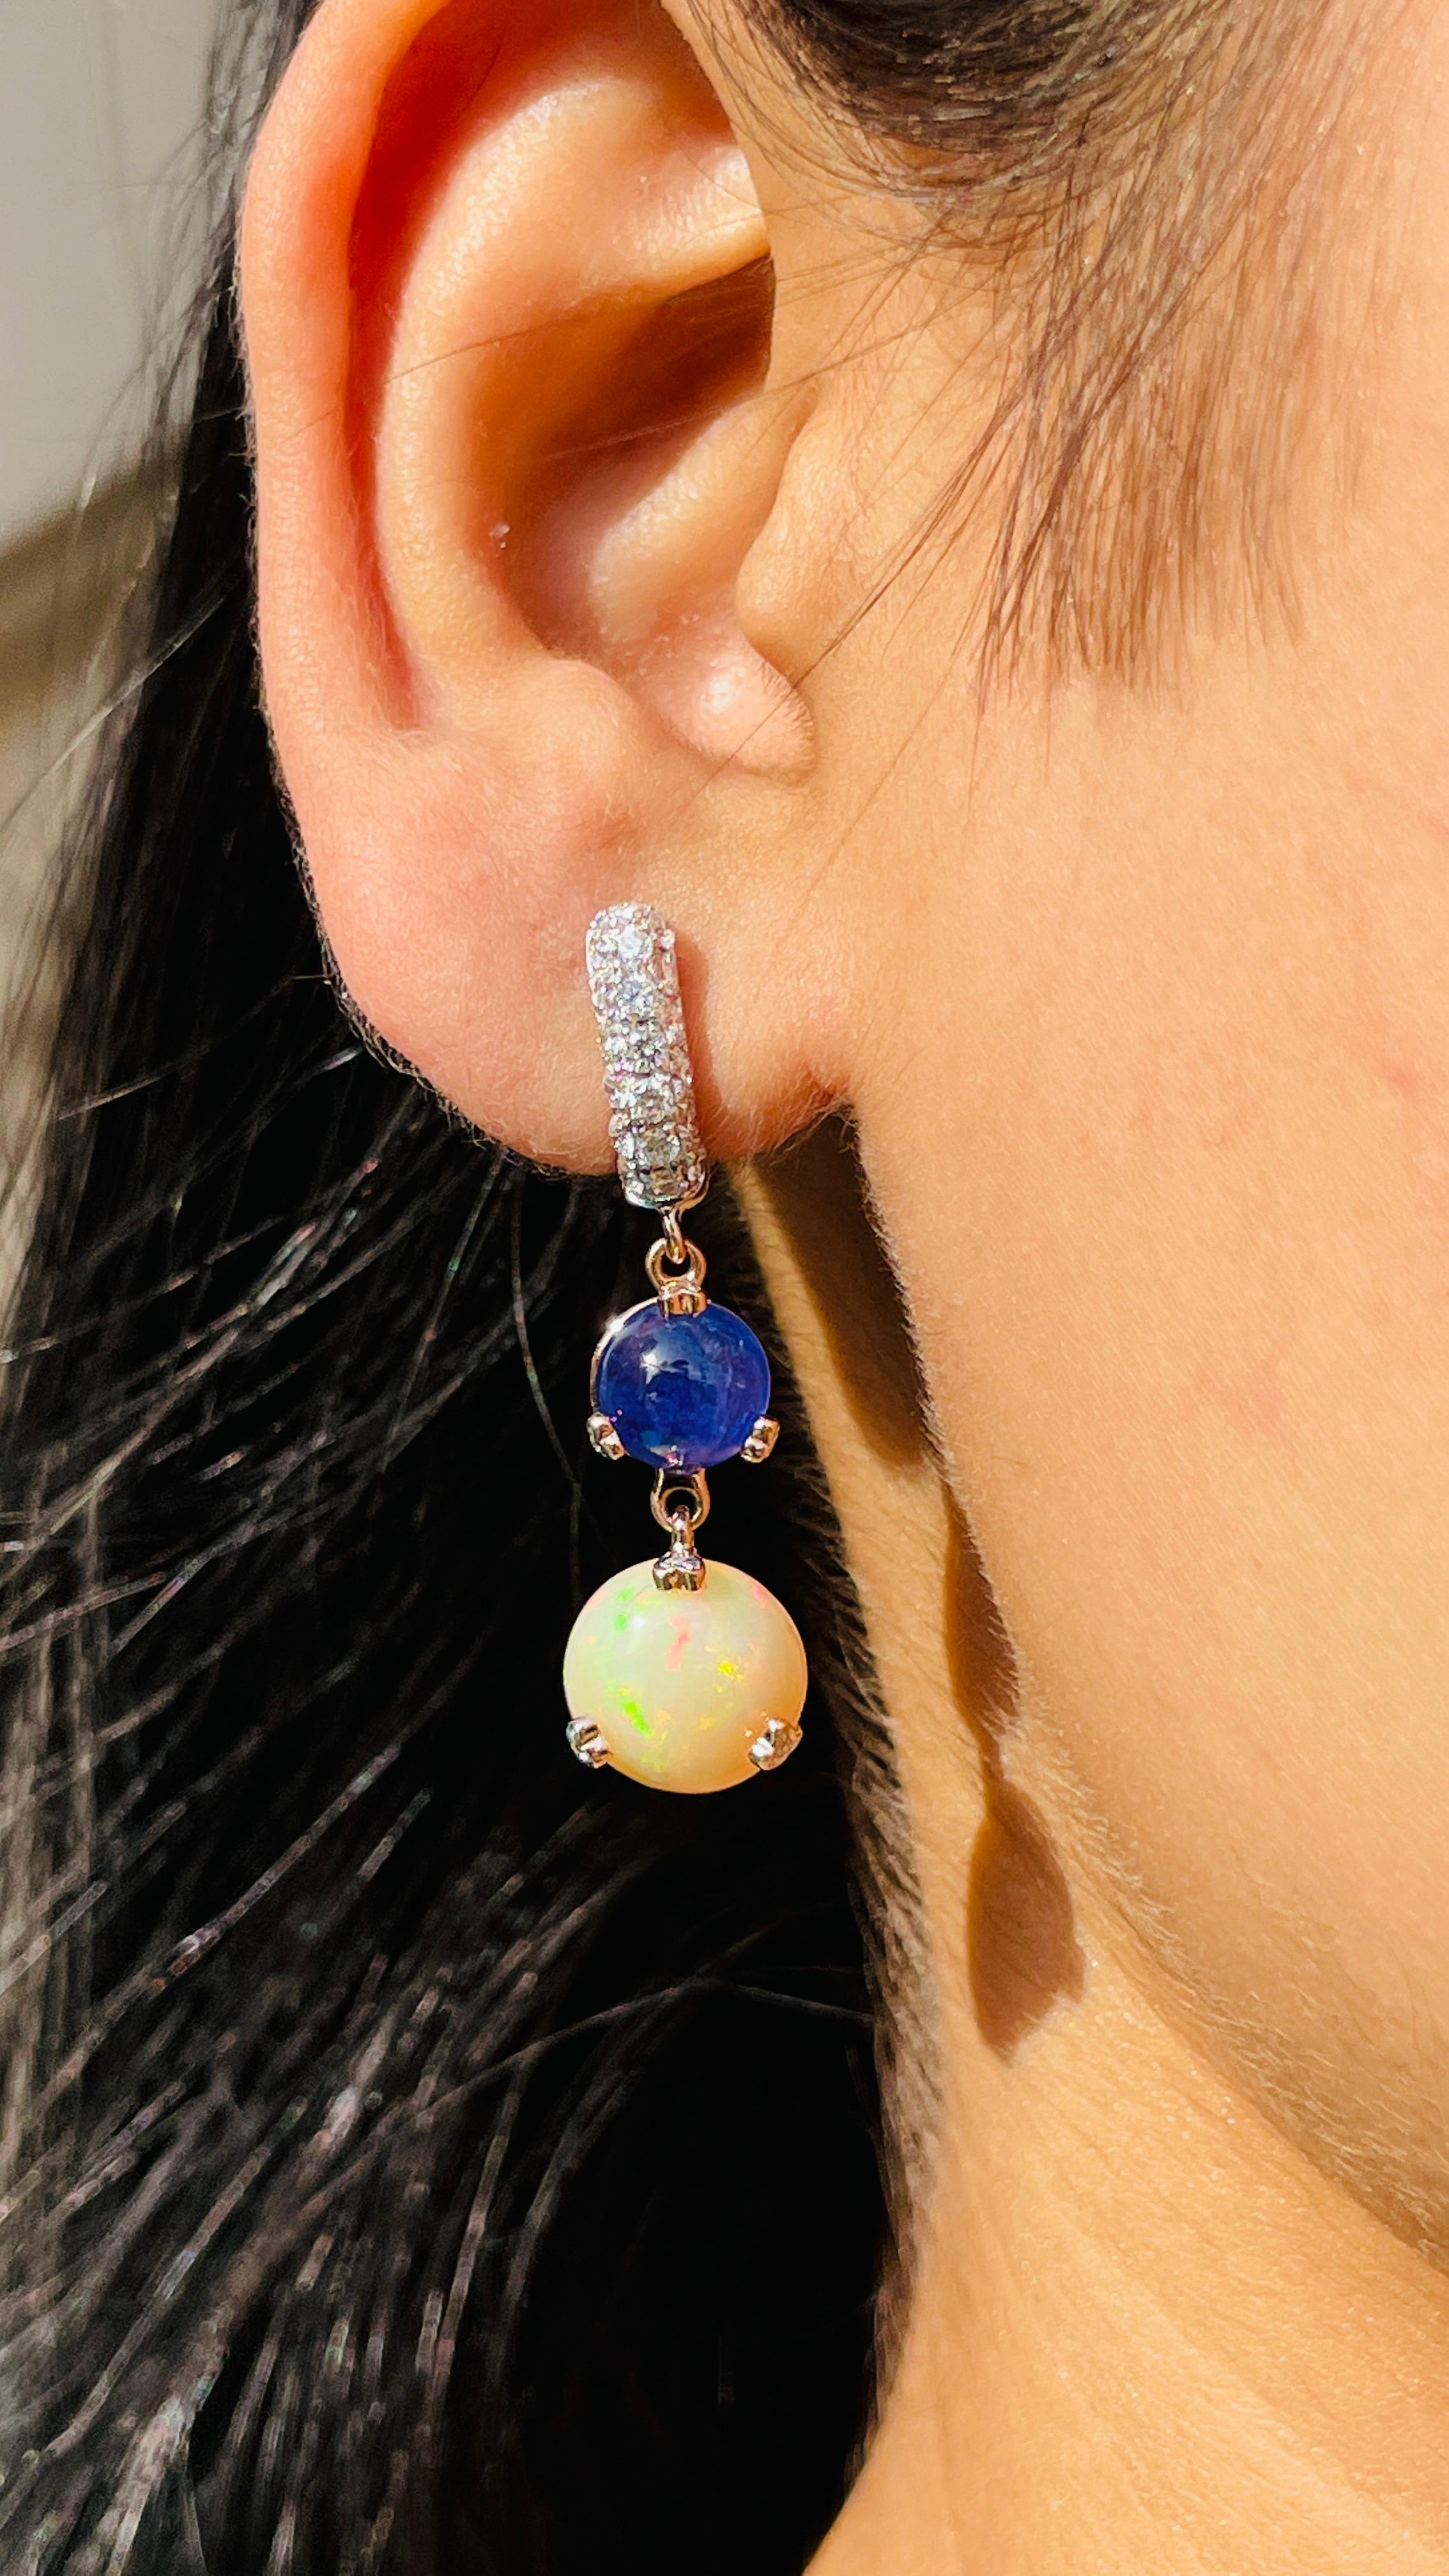 Blauer Saphir und Opal als Ohrringe, die Ihren Look unterstreichen. Diese Ohrringe mit rund geschliffenem Edelstein sorgen für einen funkelnden, luxuriösen Look.
Wenn Sie einen Hang zu einzigartigen Stilen haben, ist dieses Schmuckstück genau das